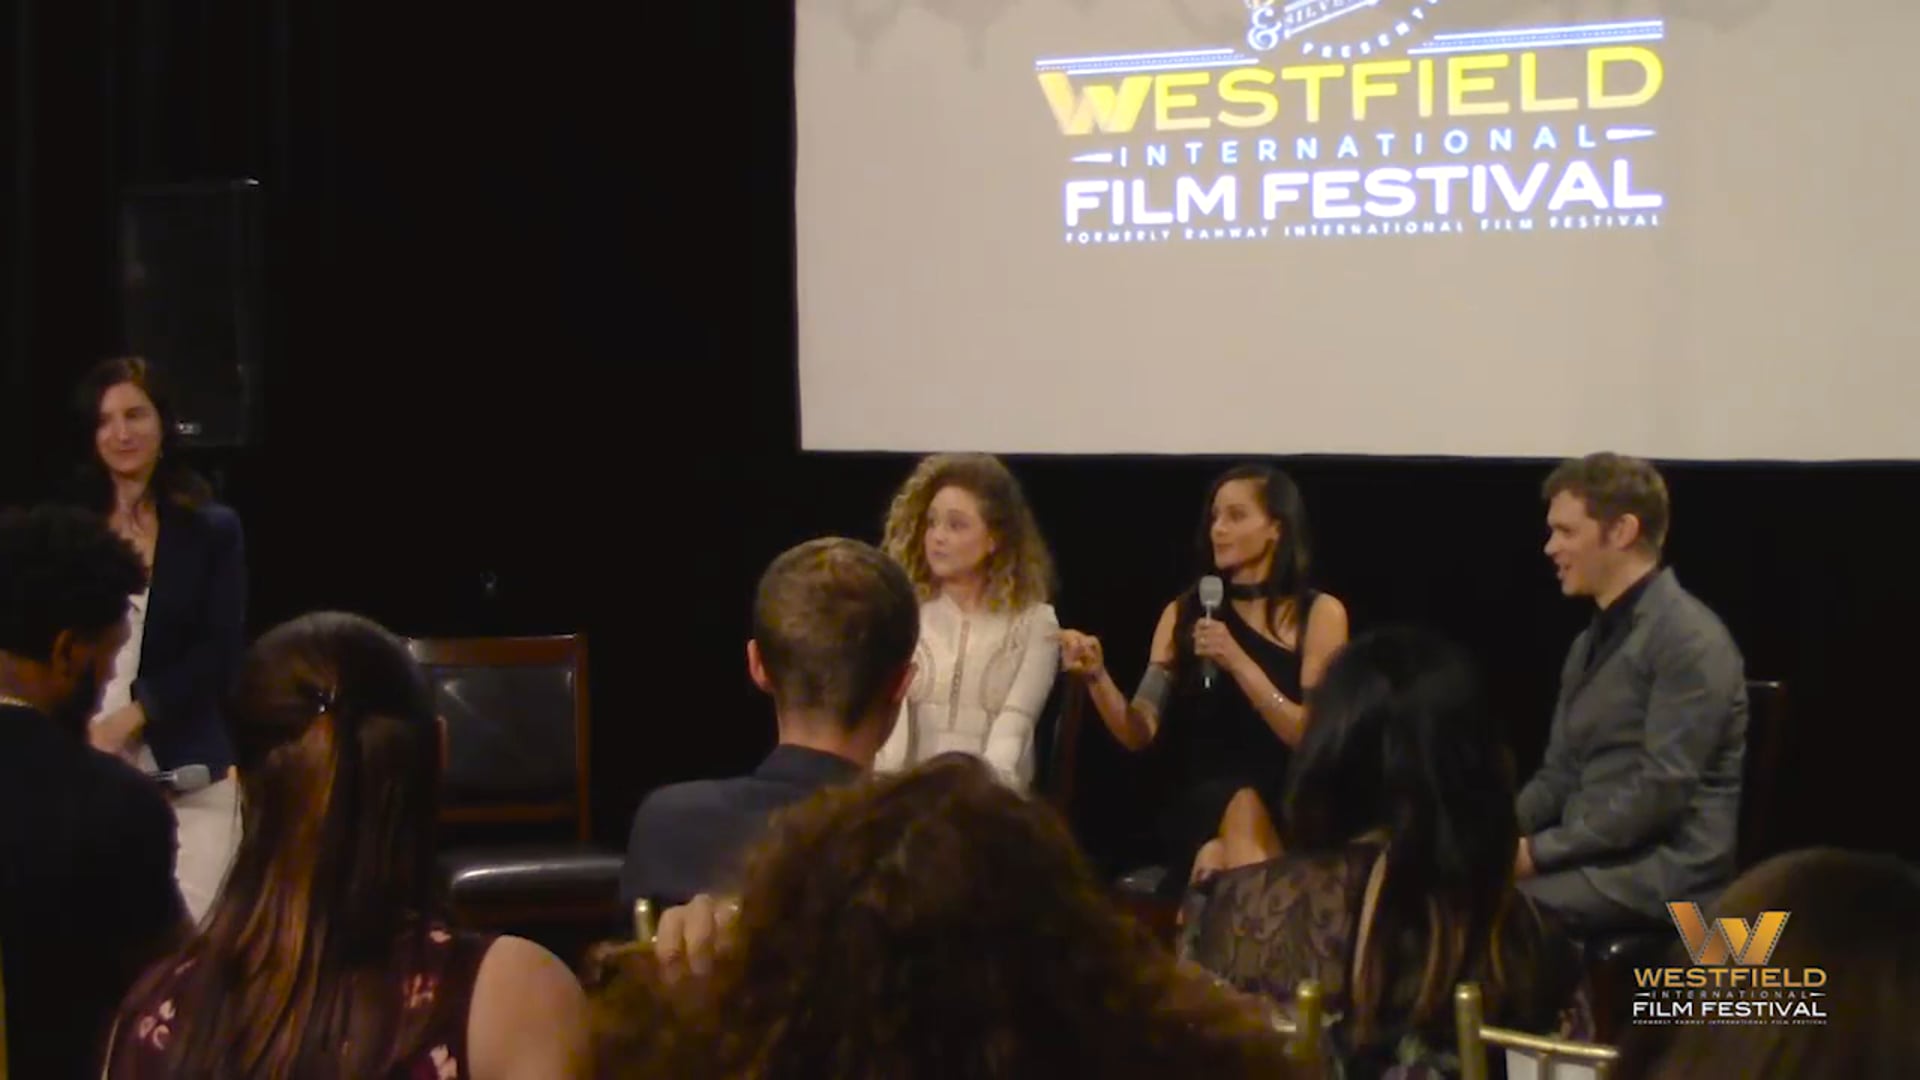 2018 WIFF Woman in Film Ceremony & Panel with Persia White, Joseph Morgan, & Mecca White